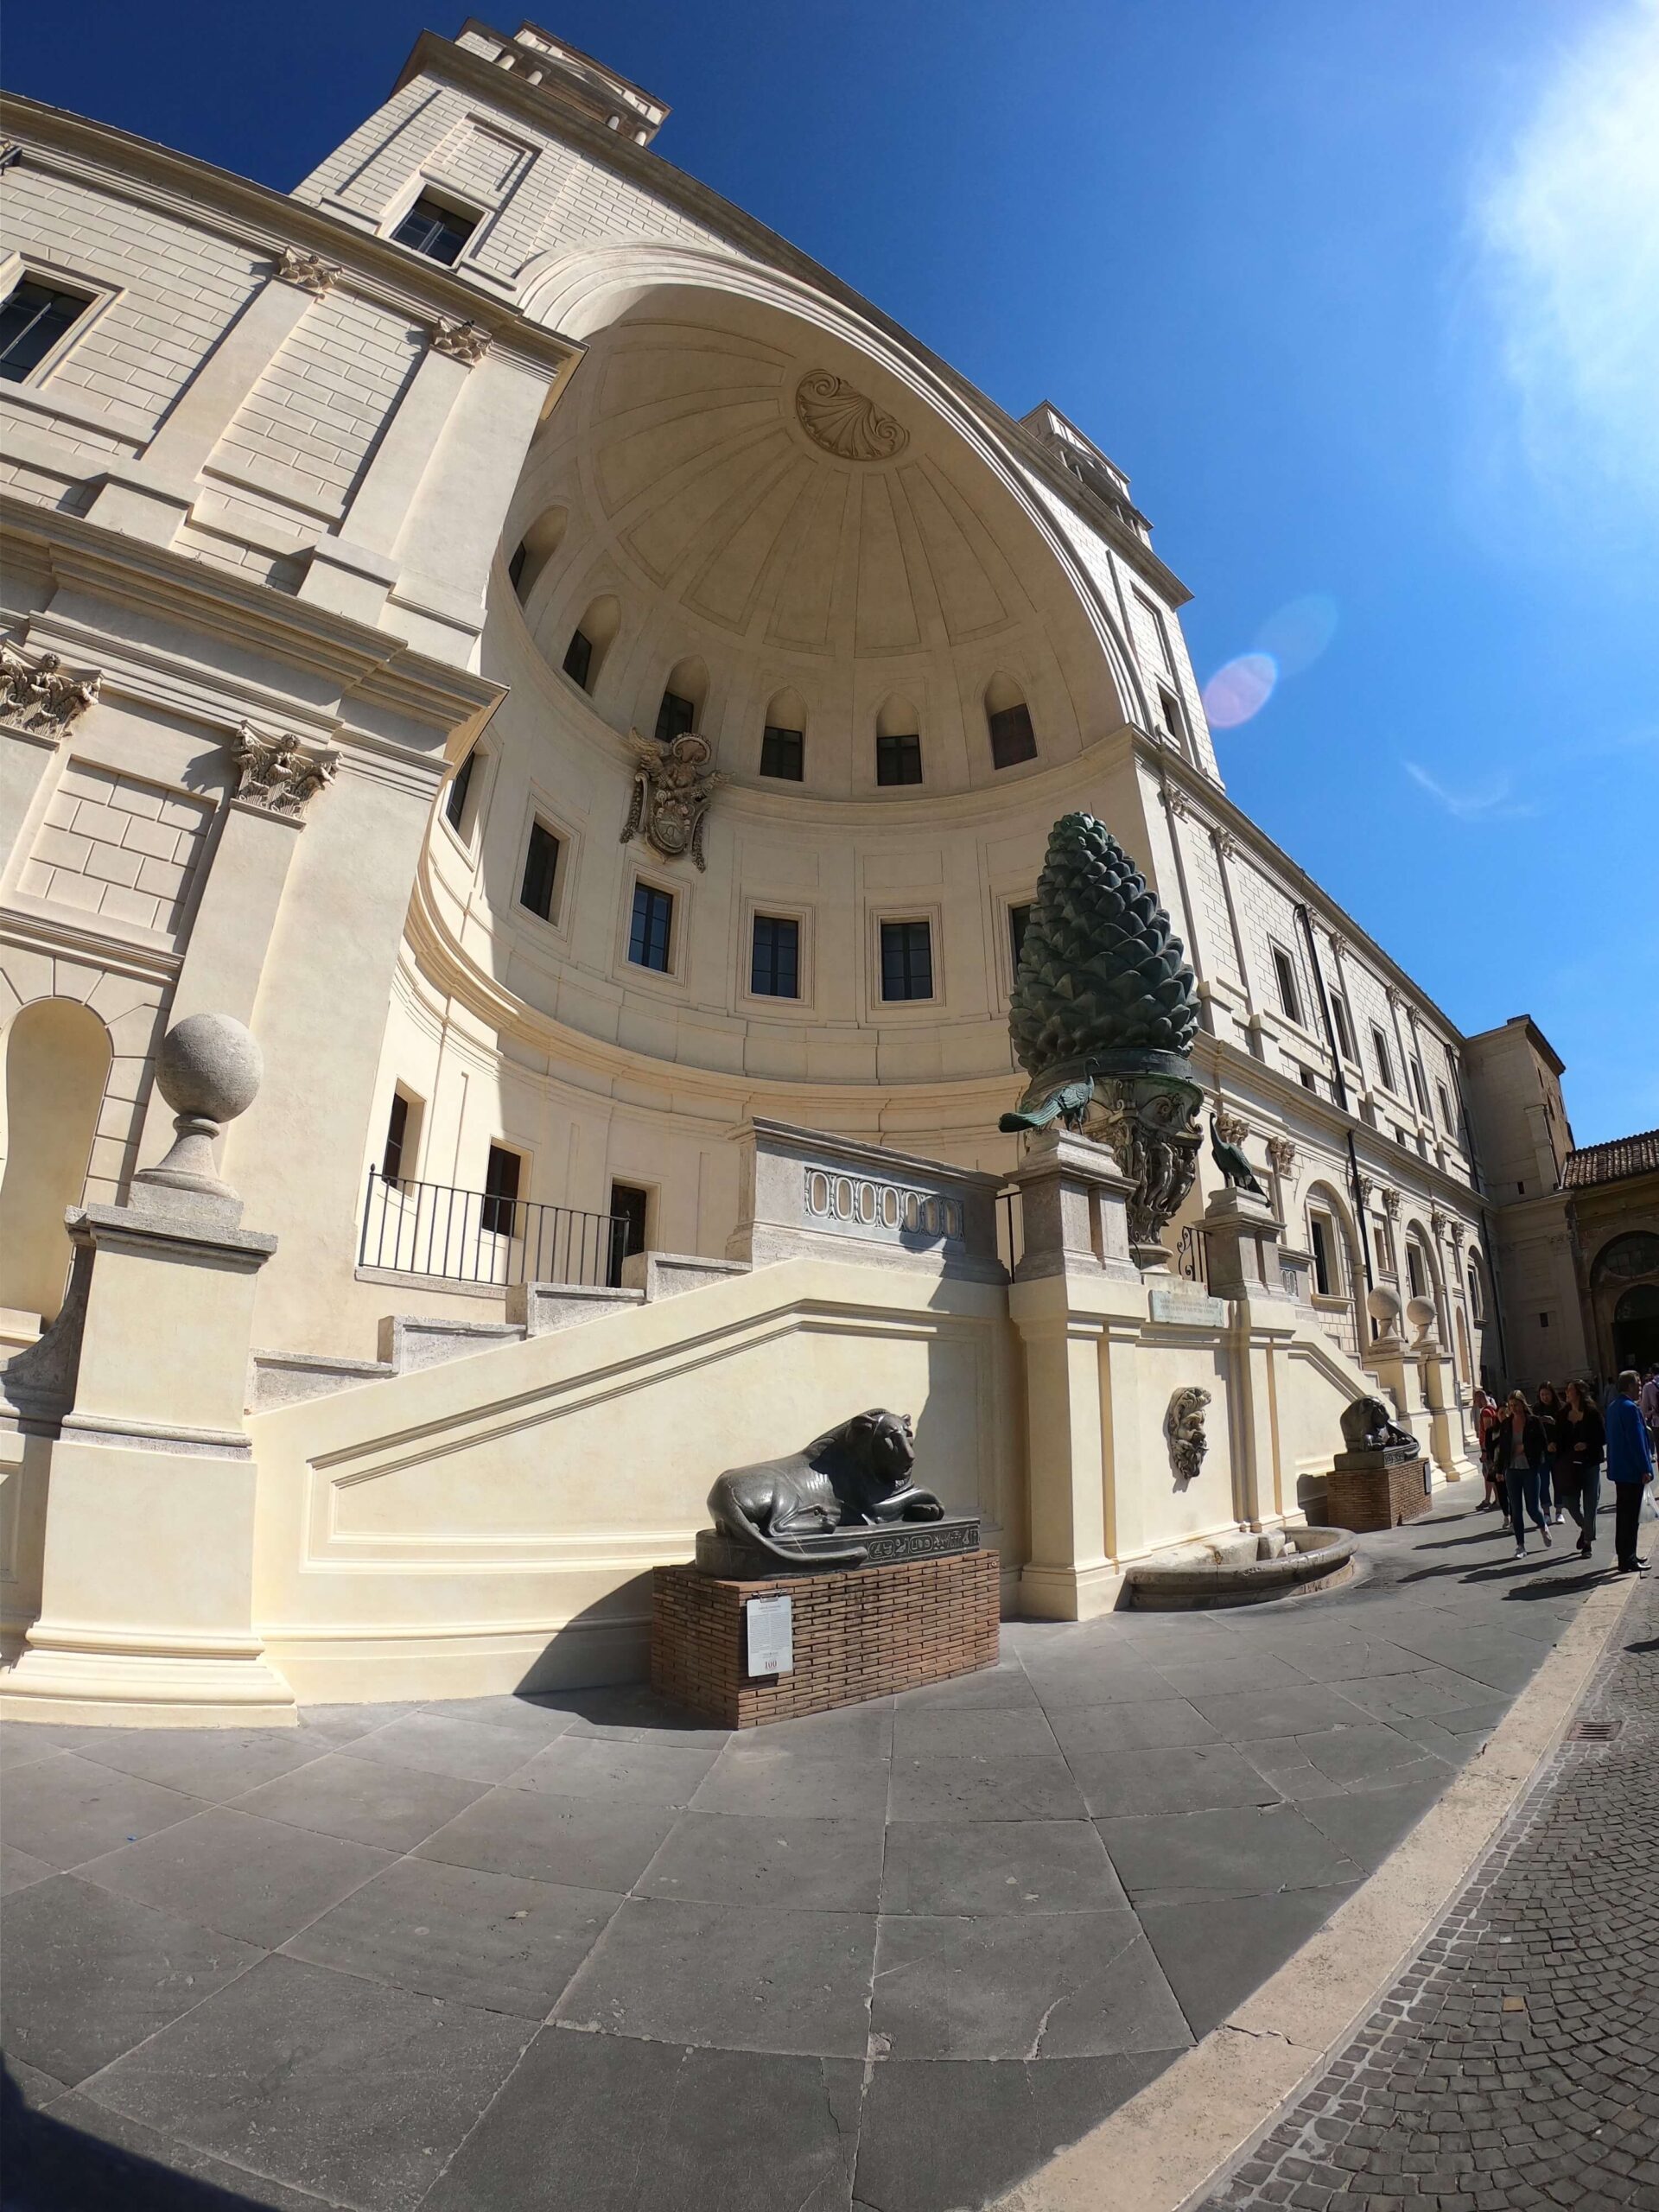 The Cortile della Pigna, Vatican Museum, Vatican City